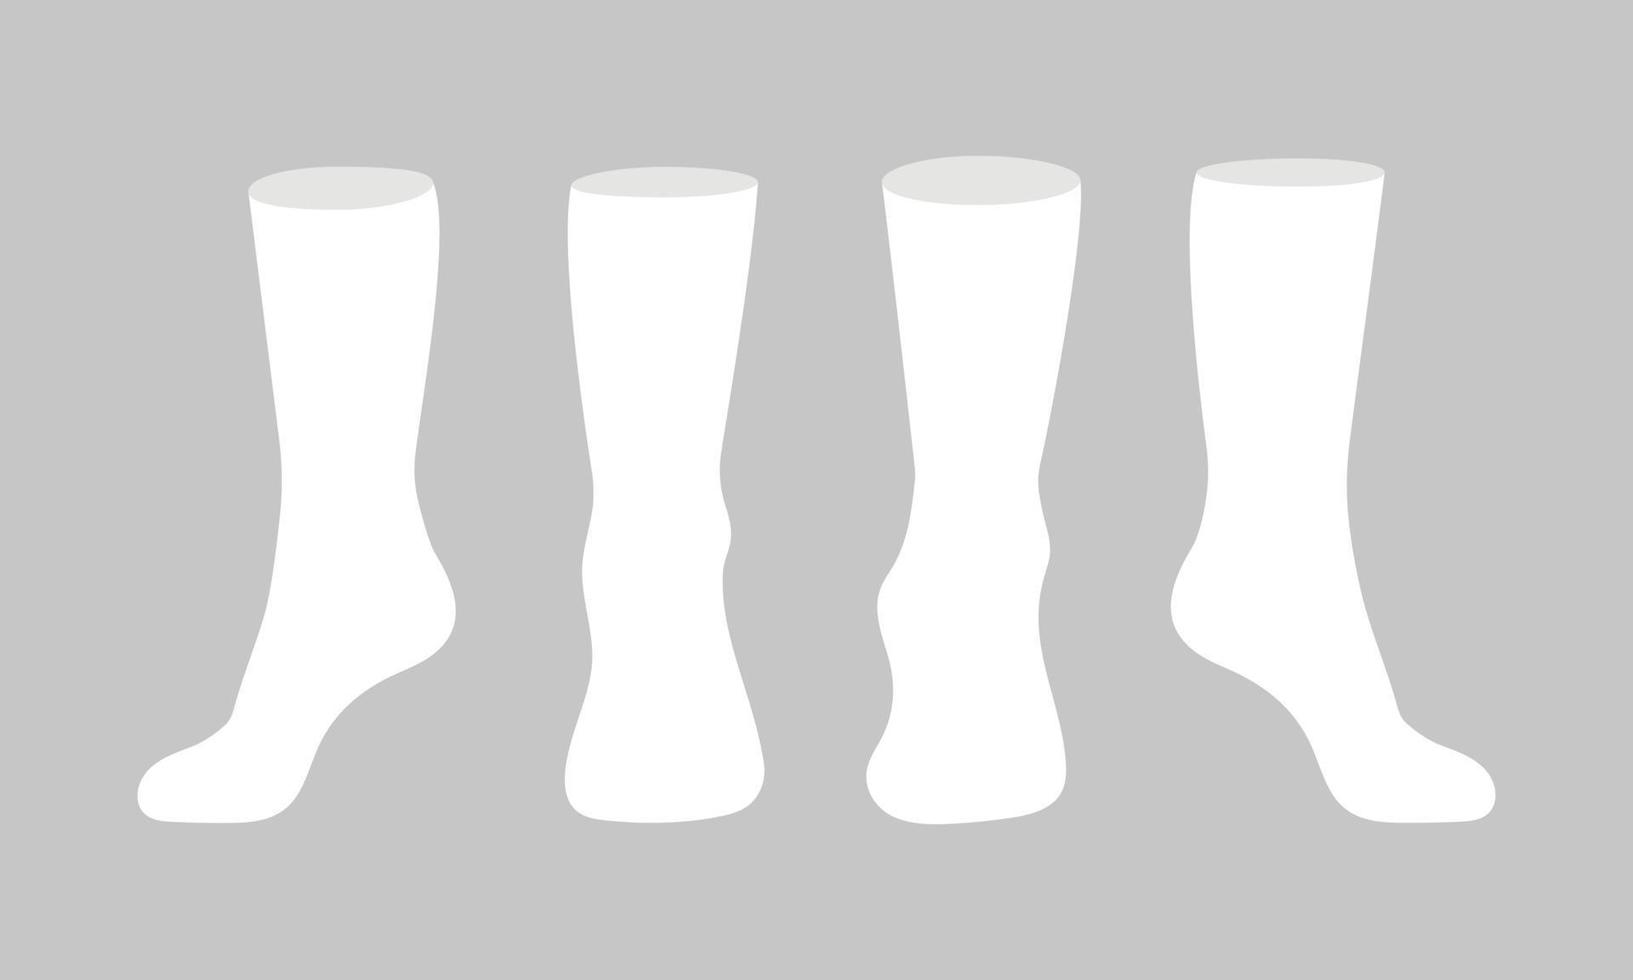 Vektor-Illustrationssatz des flachen Artdesigns des weißen Sockenschablonenmodells lokalisiert auf weißem Hintergrund. vektor